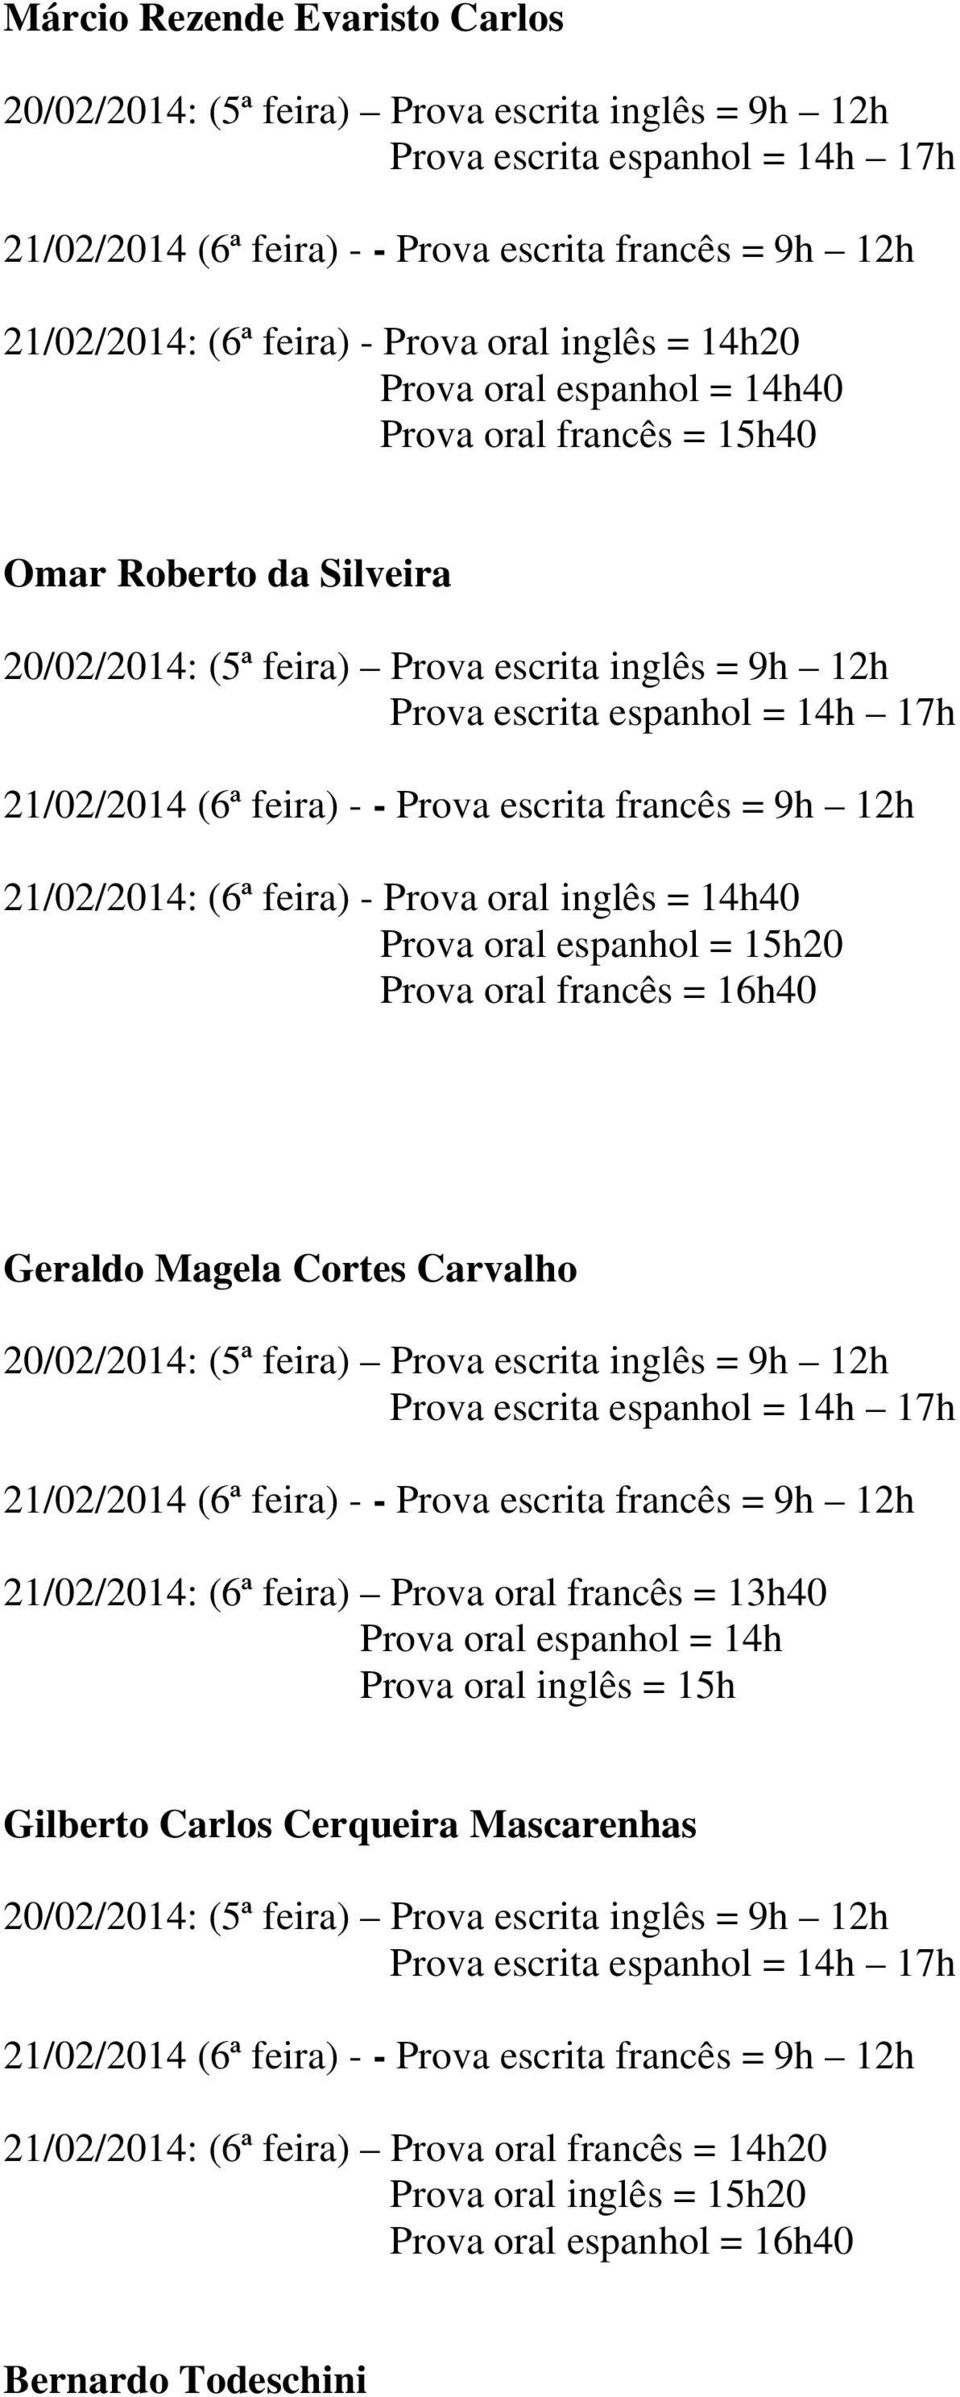 Magela Cortes Carvalho 21/02/2014: (6ª feira) Prova oral francês = 13h40 Prova oral espanhol = 14h Prova oral inglês = 15h Gilberto Carlos